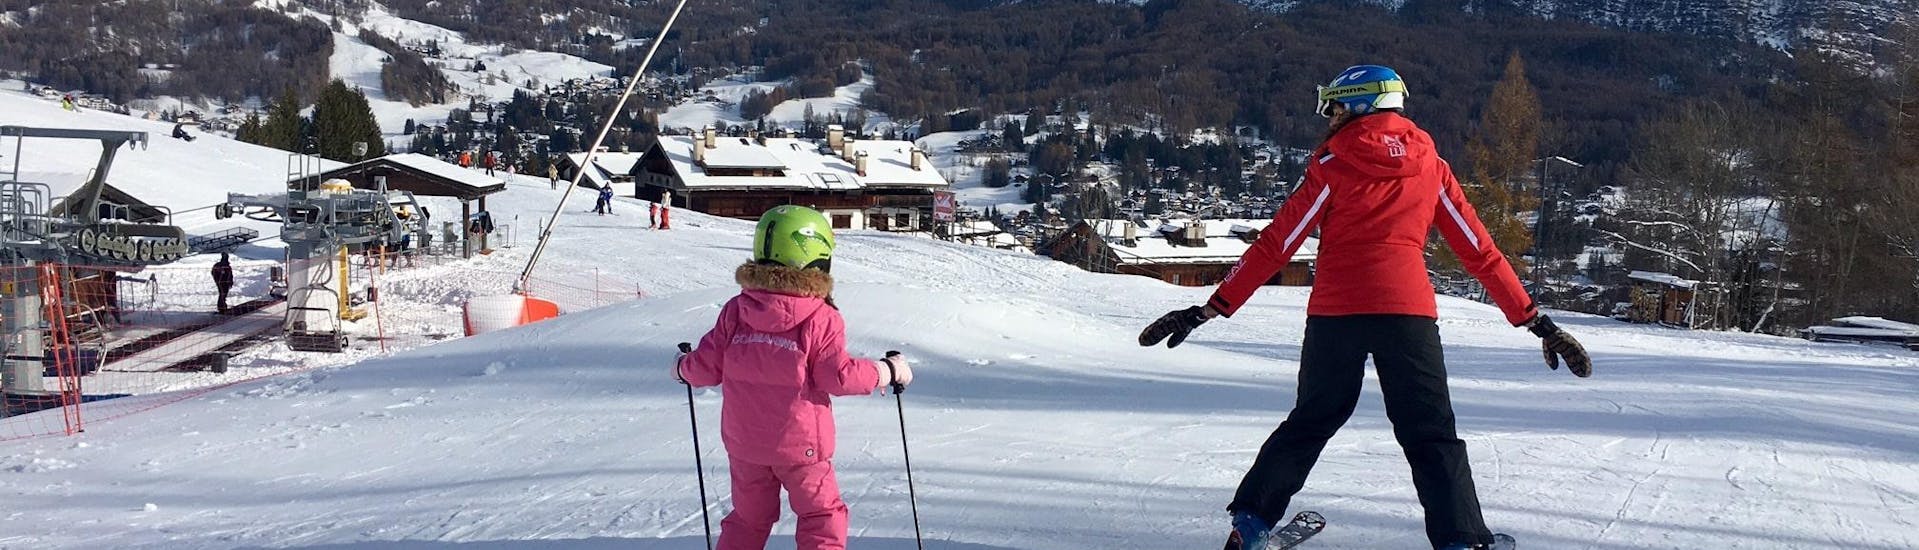 Kind en skileraar in Cortina tijdens een van de privé skilessen voor kinderen van alle niveaus.